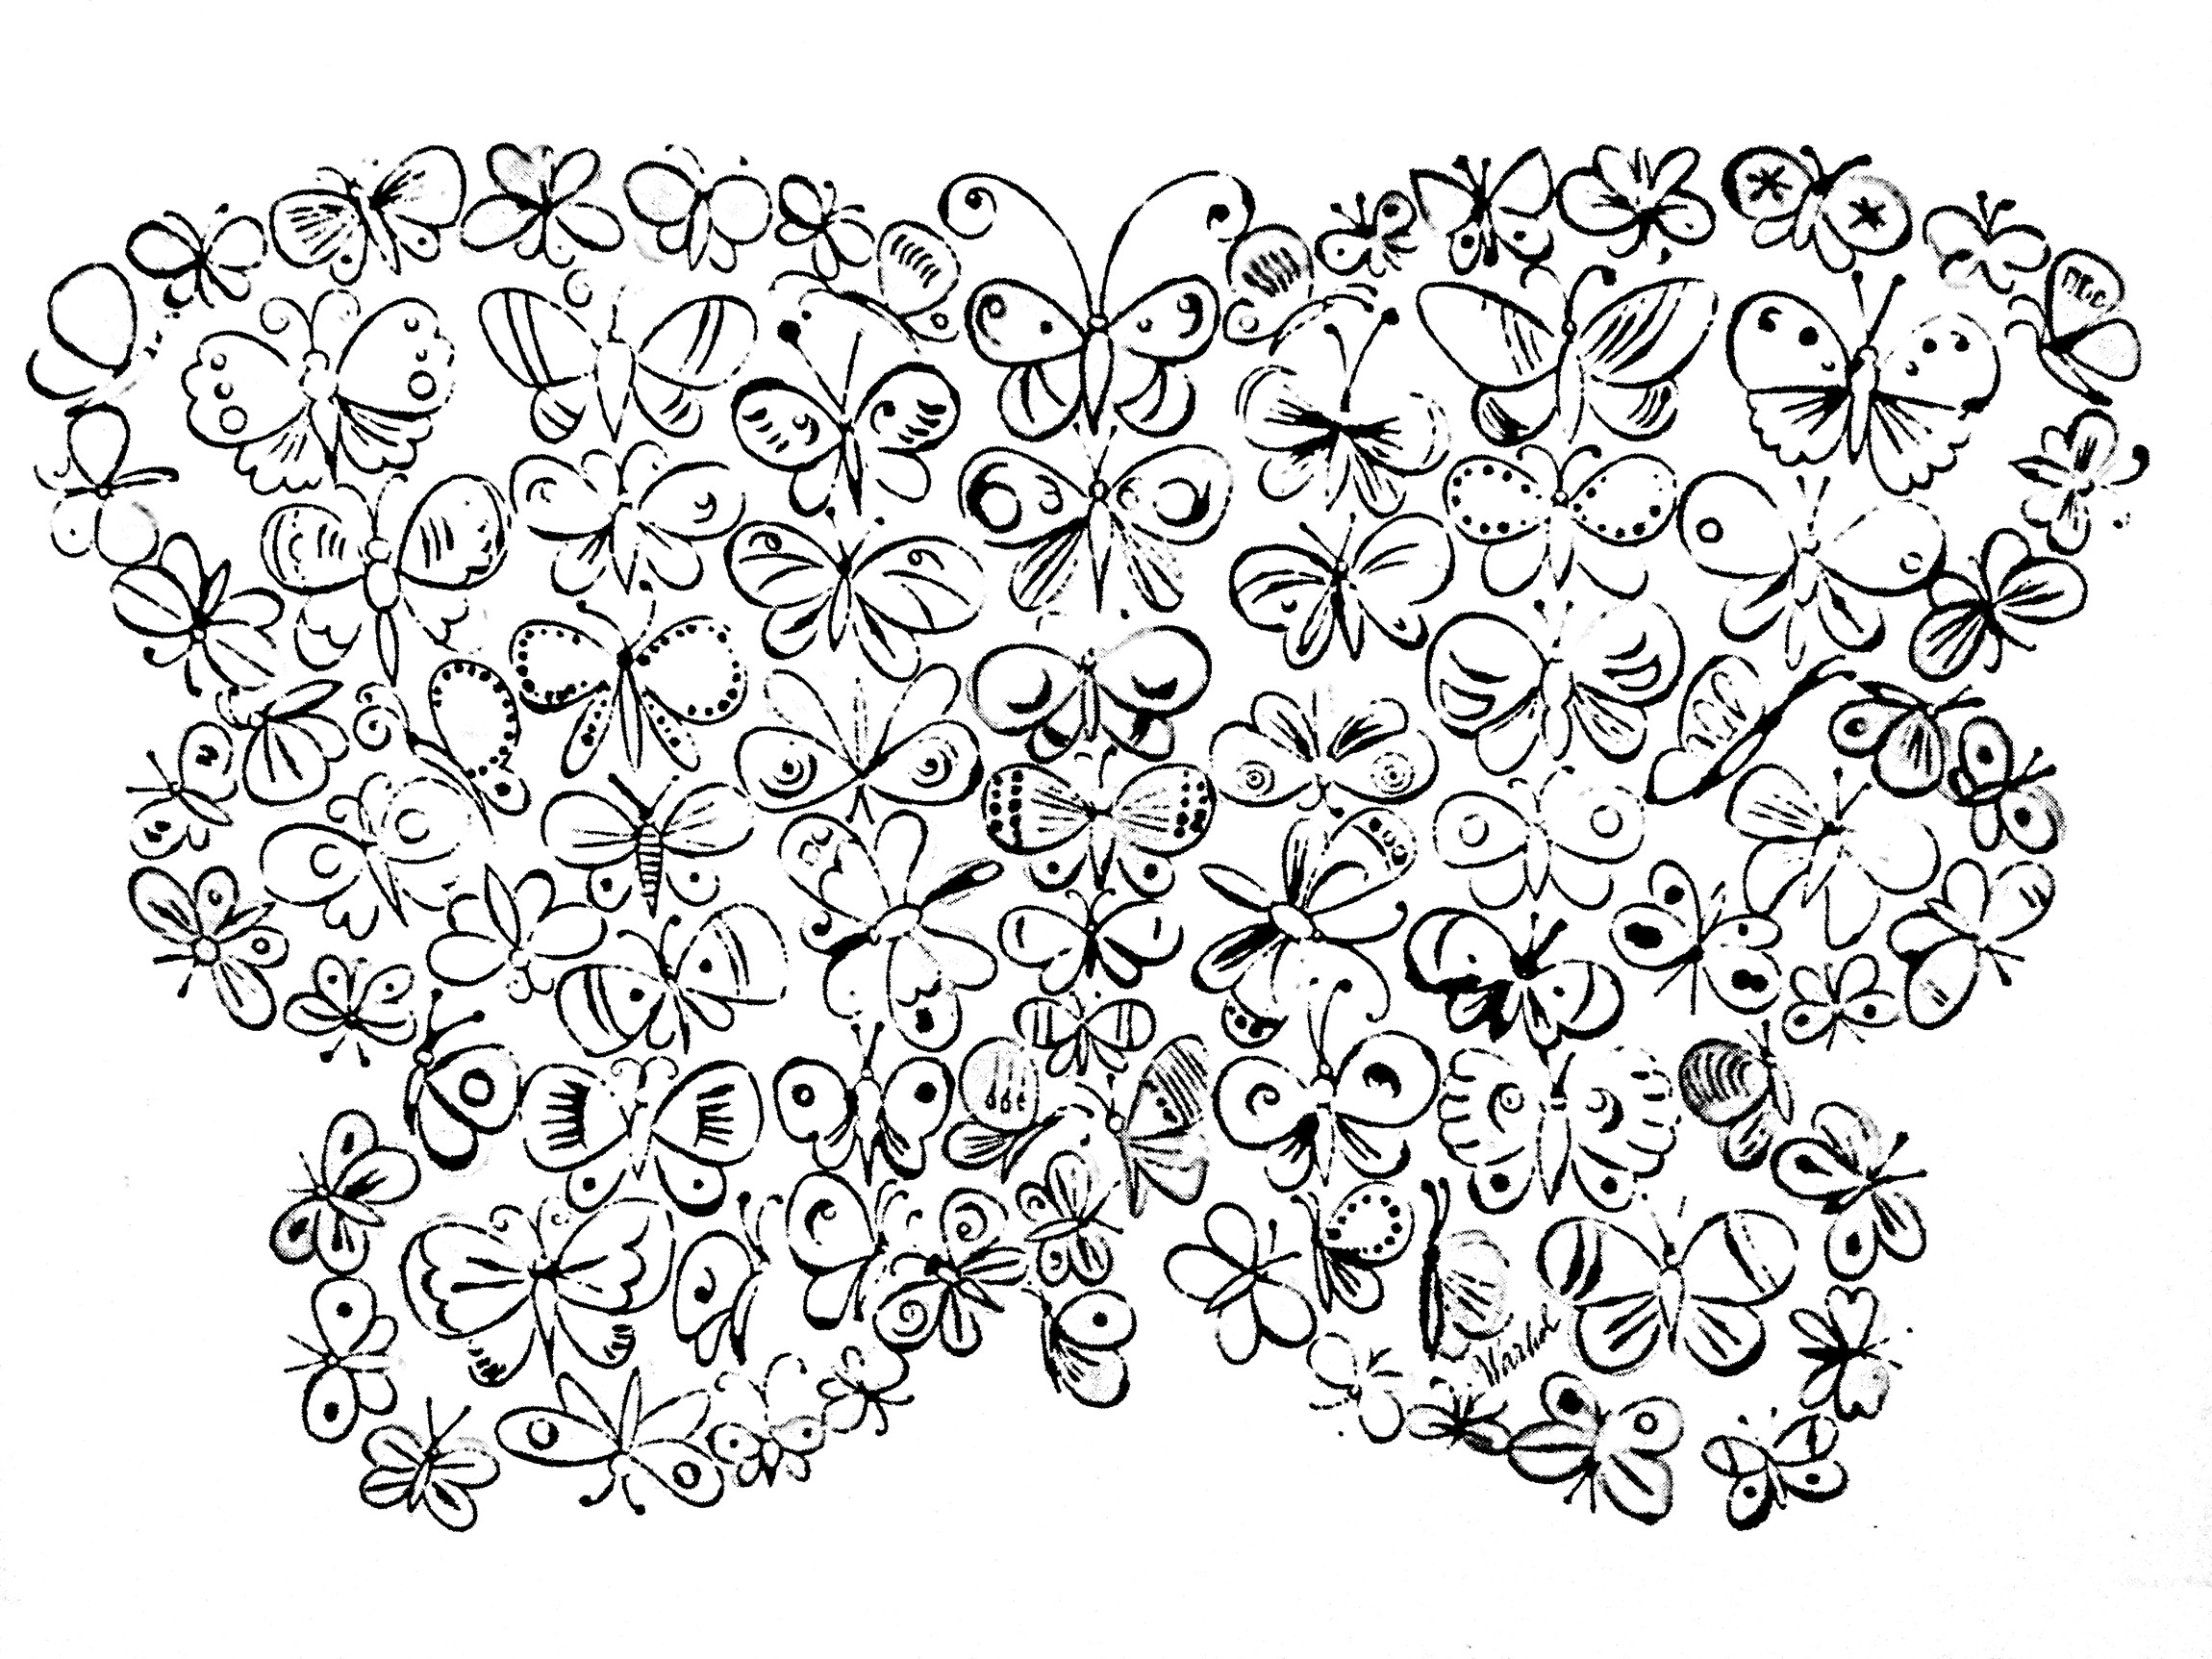 Dessin de papillons, par Andy Warhol